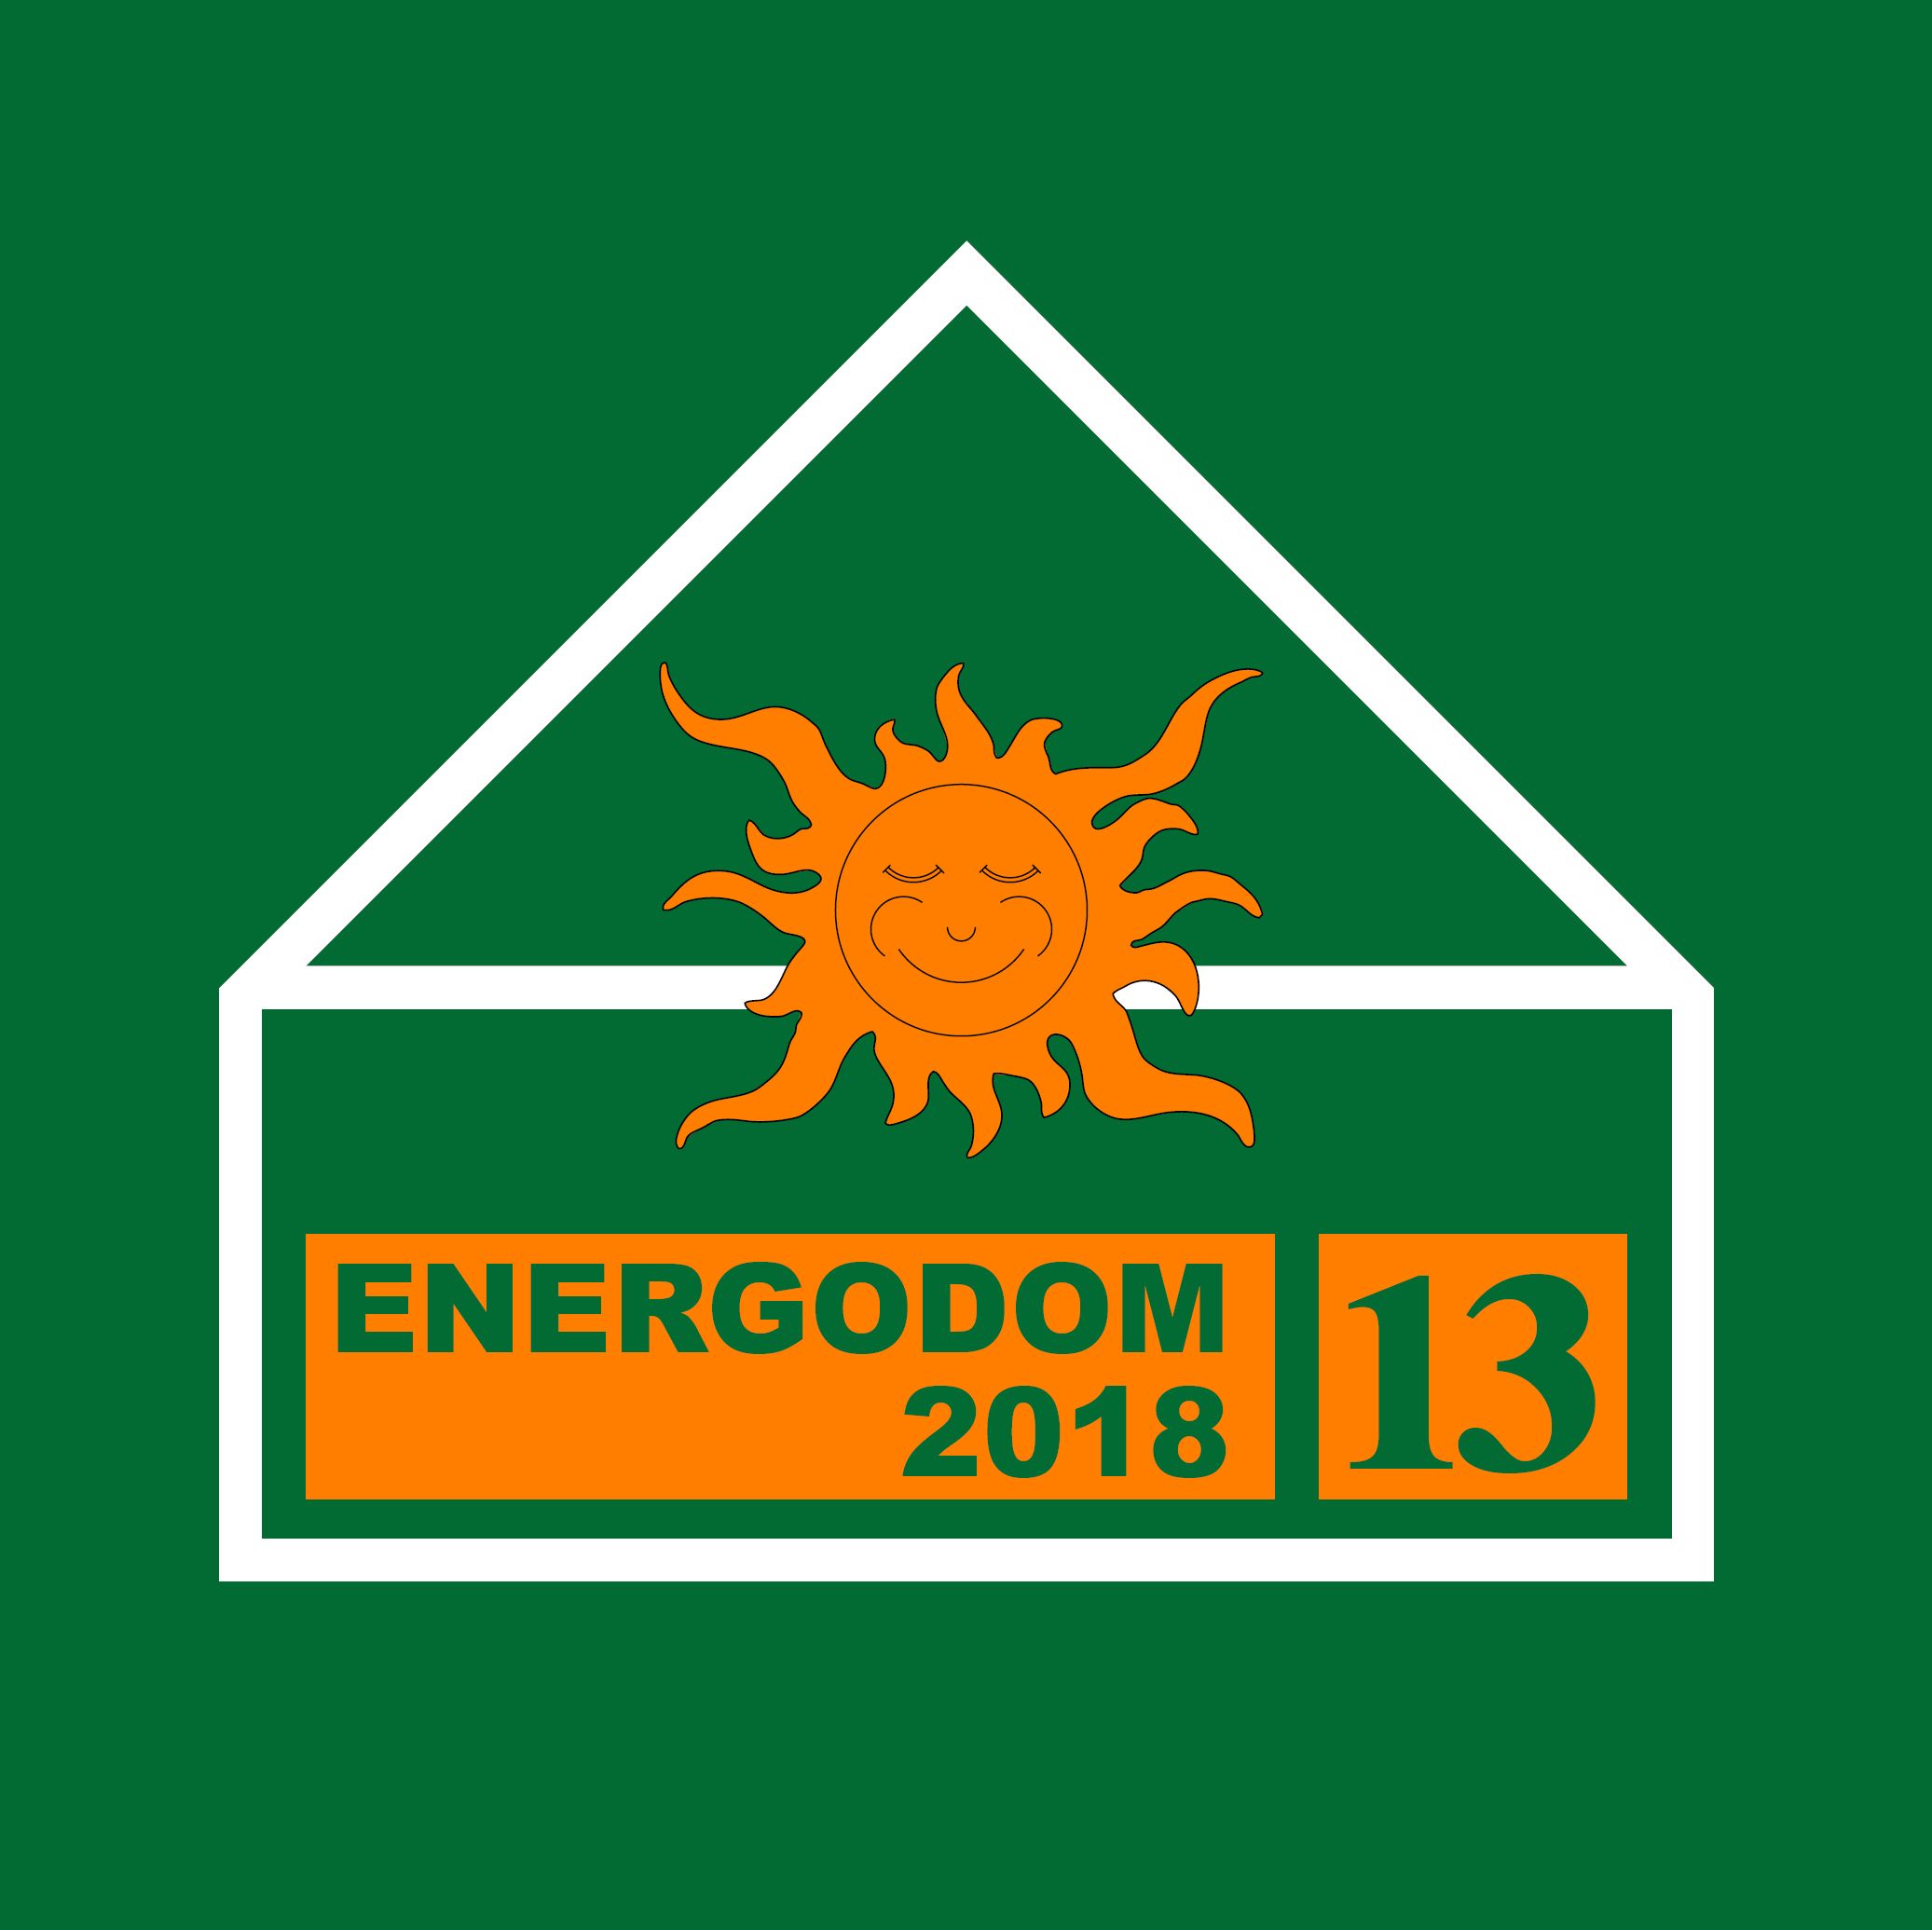 Energodom2018LOGO